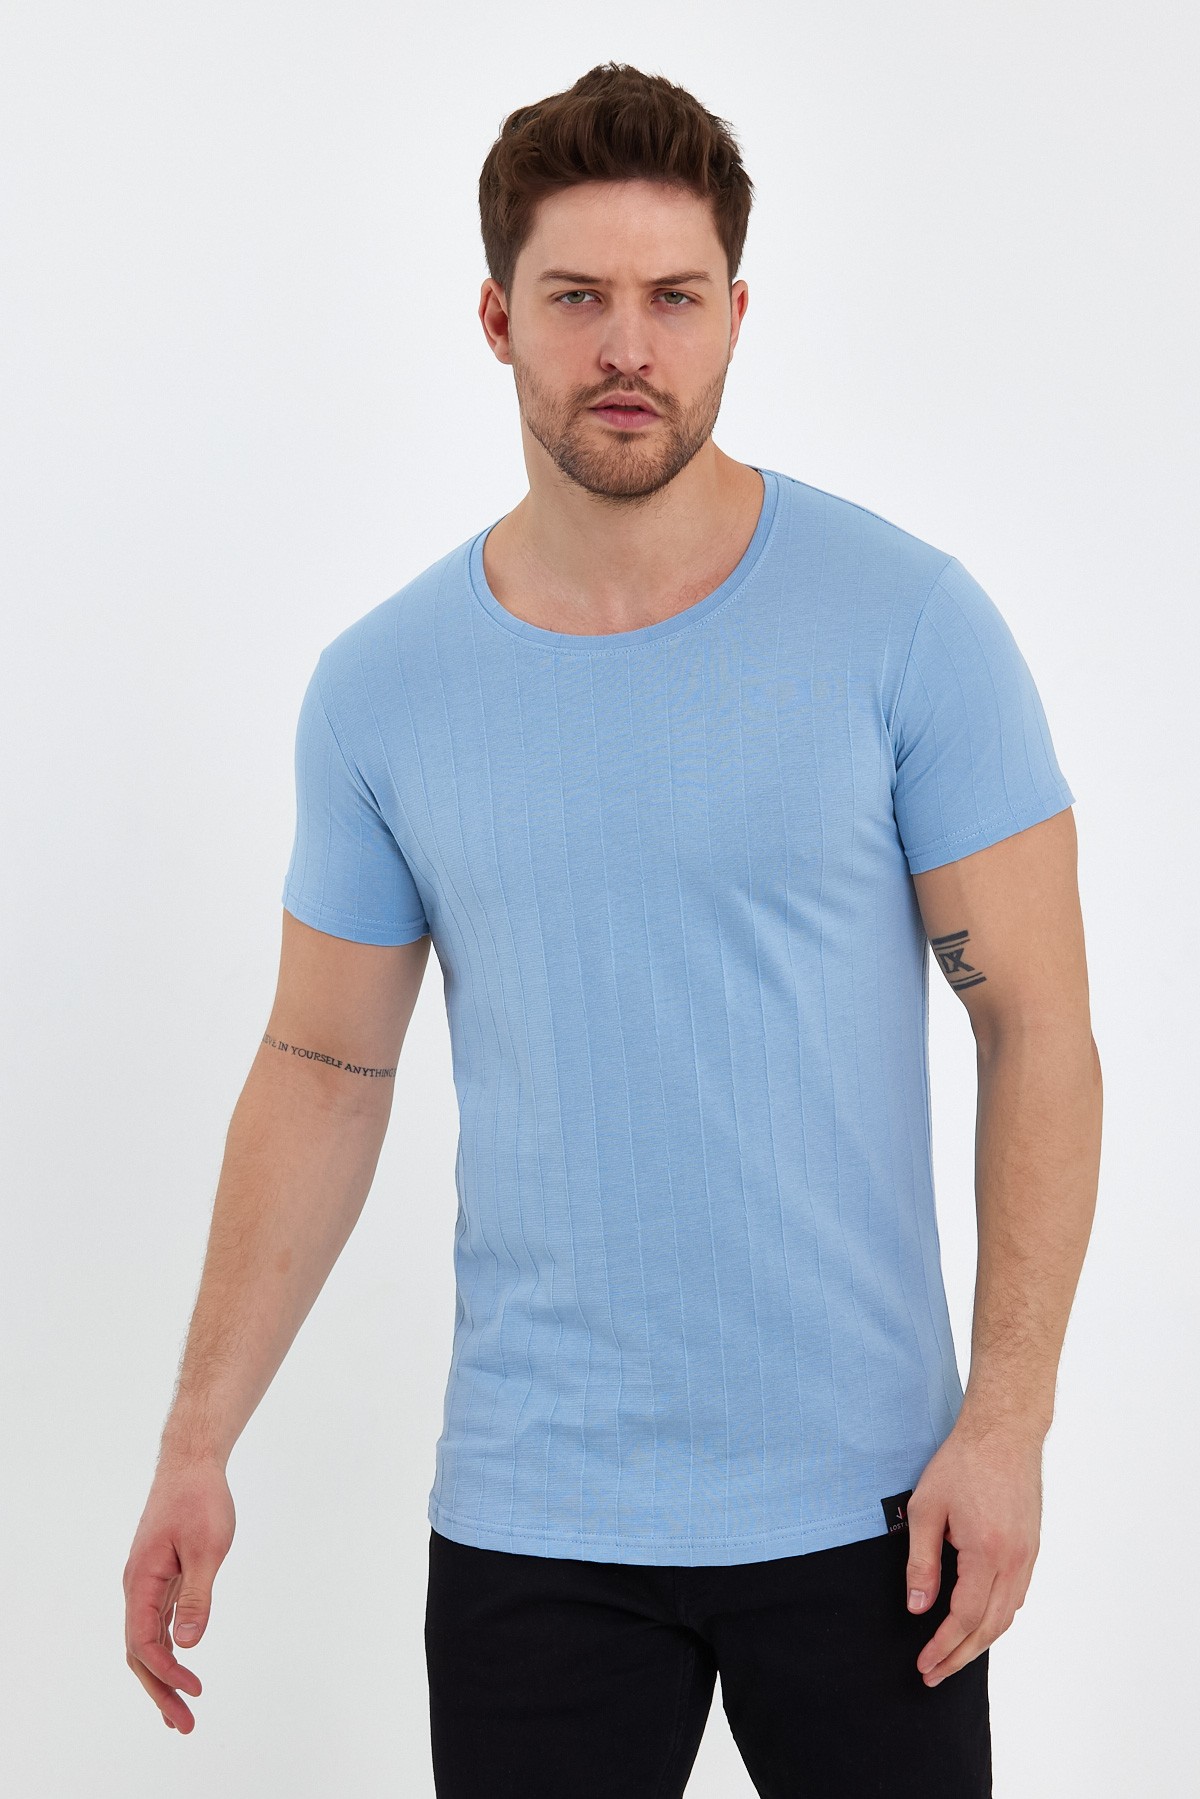 Jakarlı Basic Erkek Tişört - Mavi